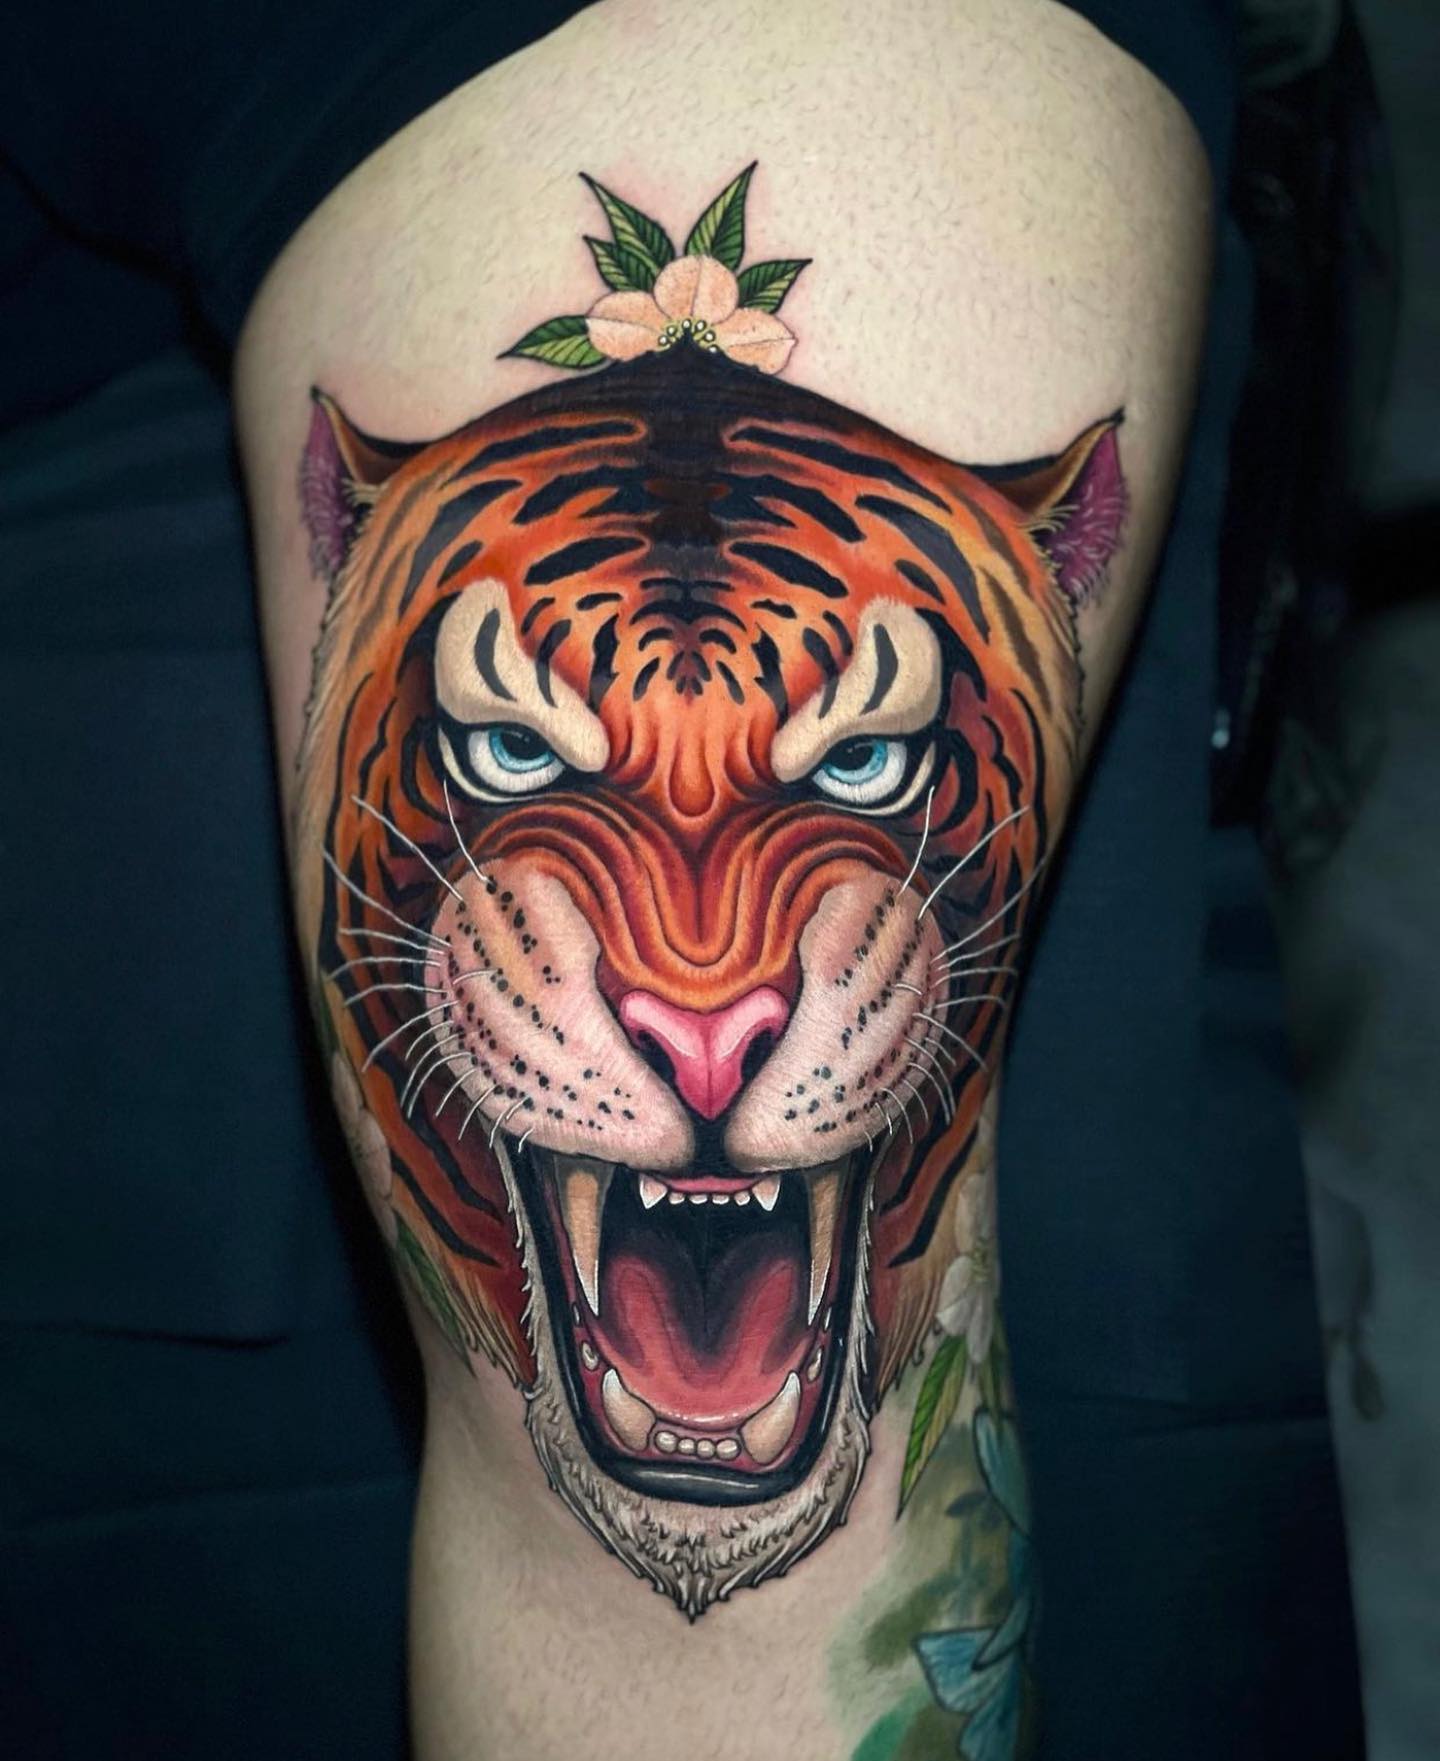 Tiger Tattoo | Tiger tattoo design, Black ink tattoos, Arm tattoo